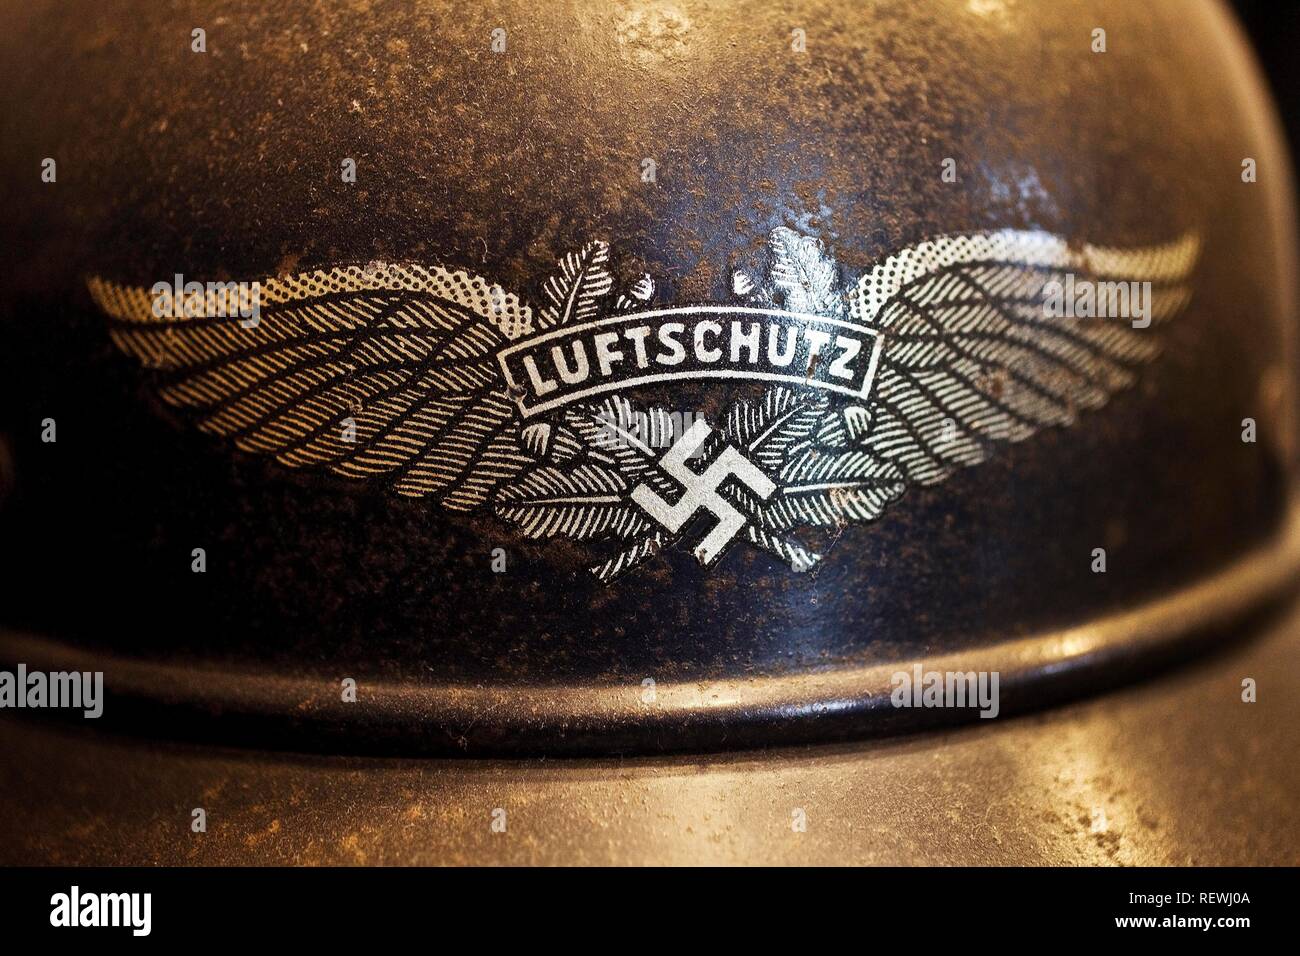 Ausstellung NS-Helm, Stahlhelm mit Hakenkreuz mit dem Schreiben der Regierung Luftschutz, Bunker, Bad Neuenahr-Ahrweiler Stockfoto